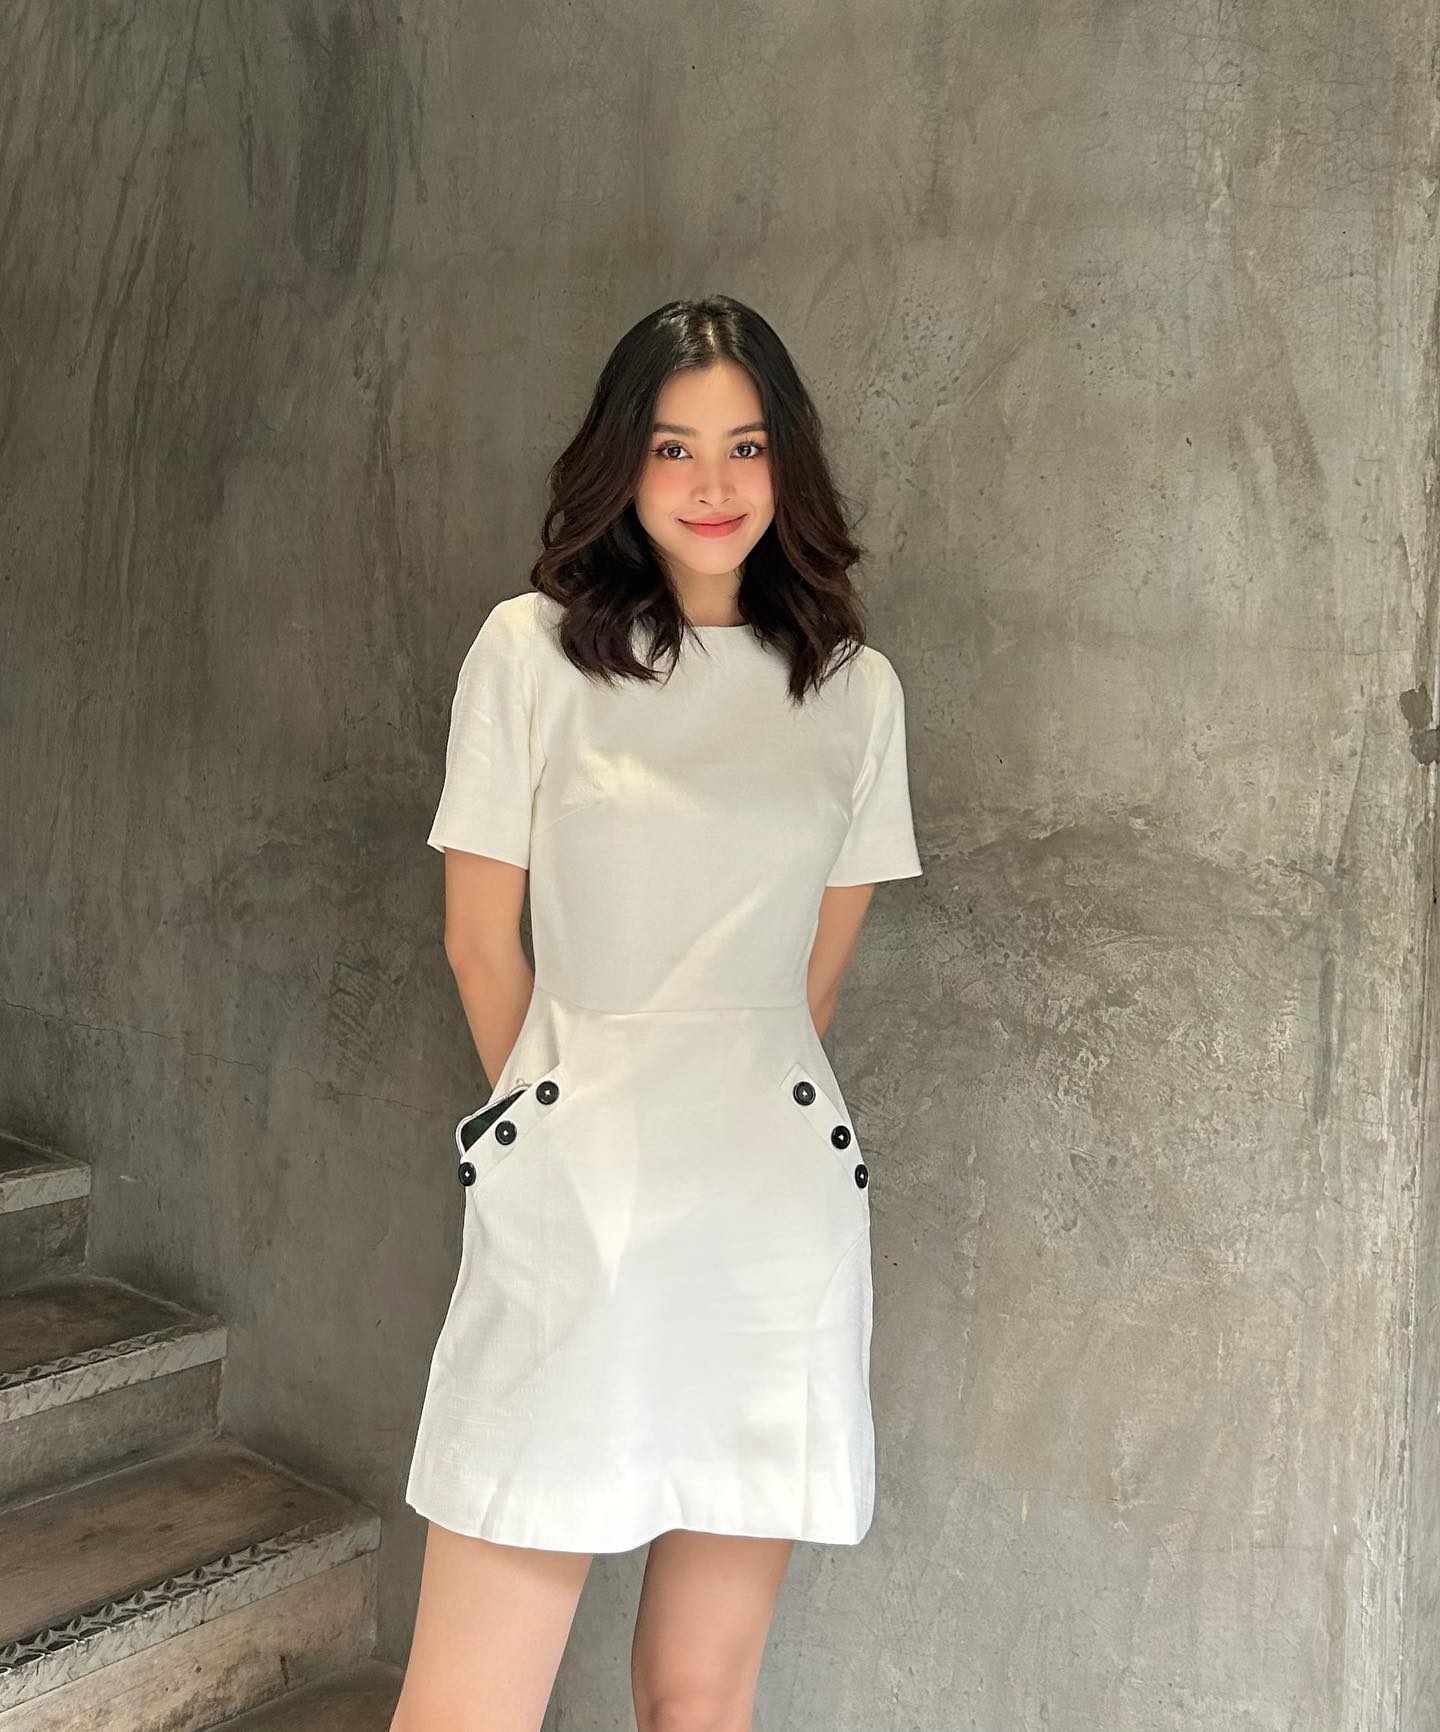 Hoa hậu Tiểu Vy thăng hạng phong cách nhờ chăm diện đồ tối giản-6